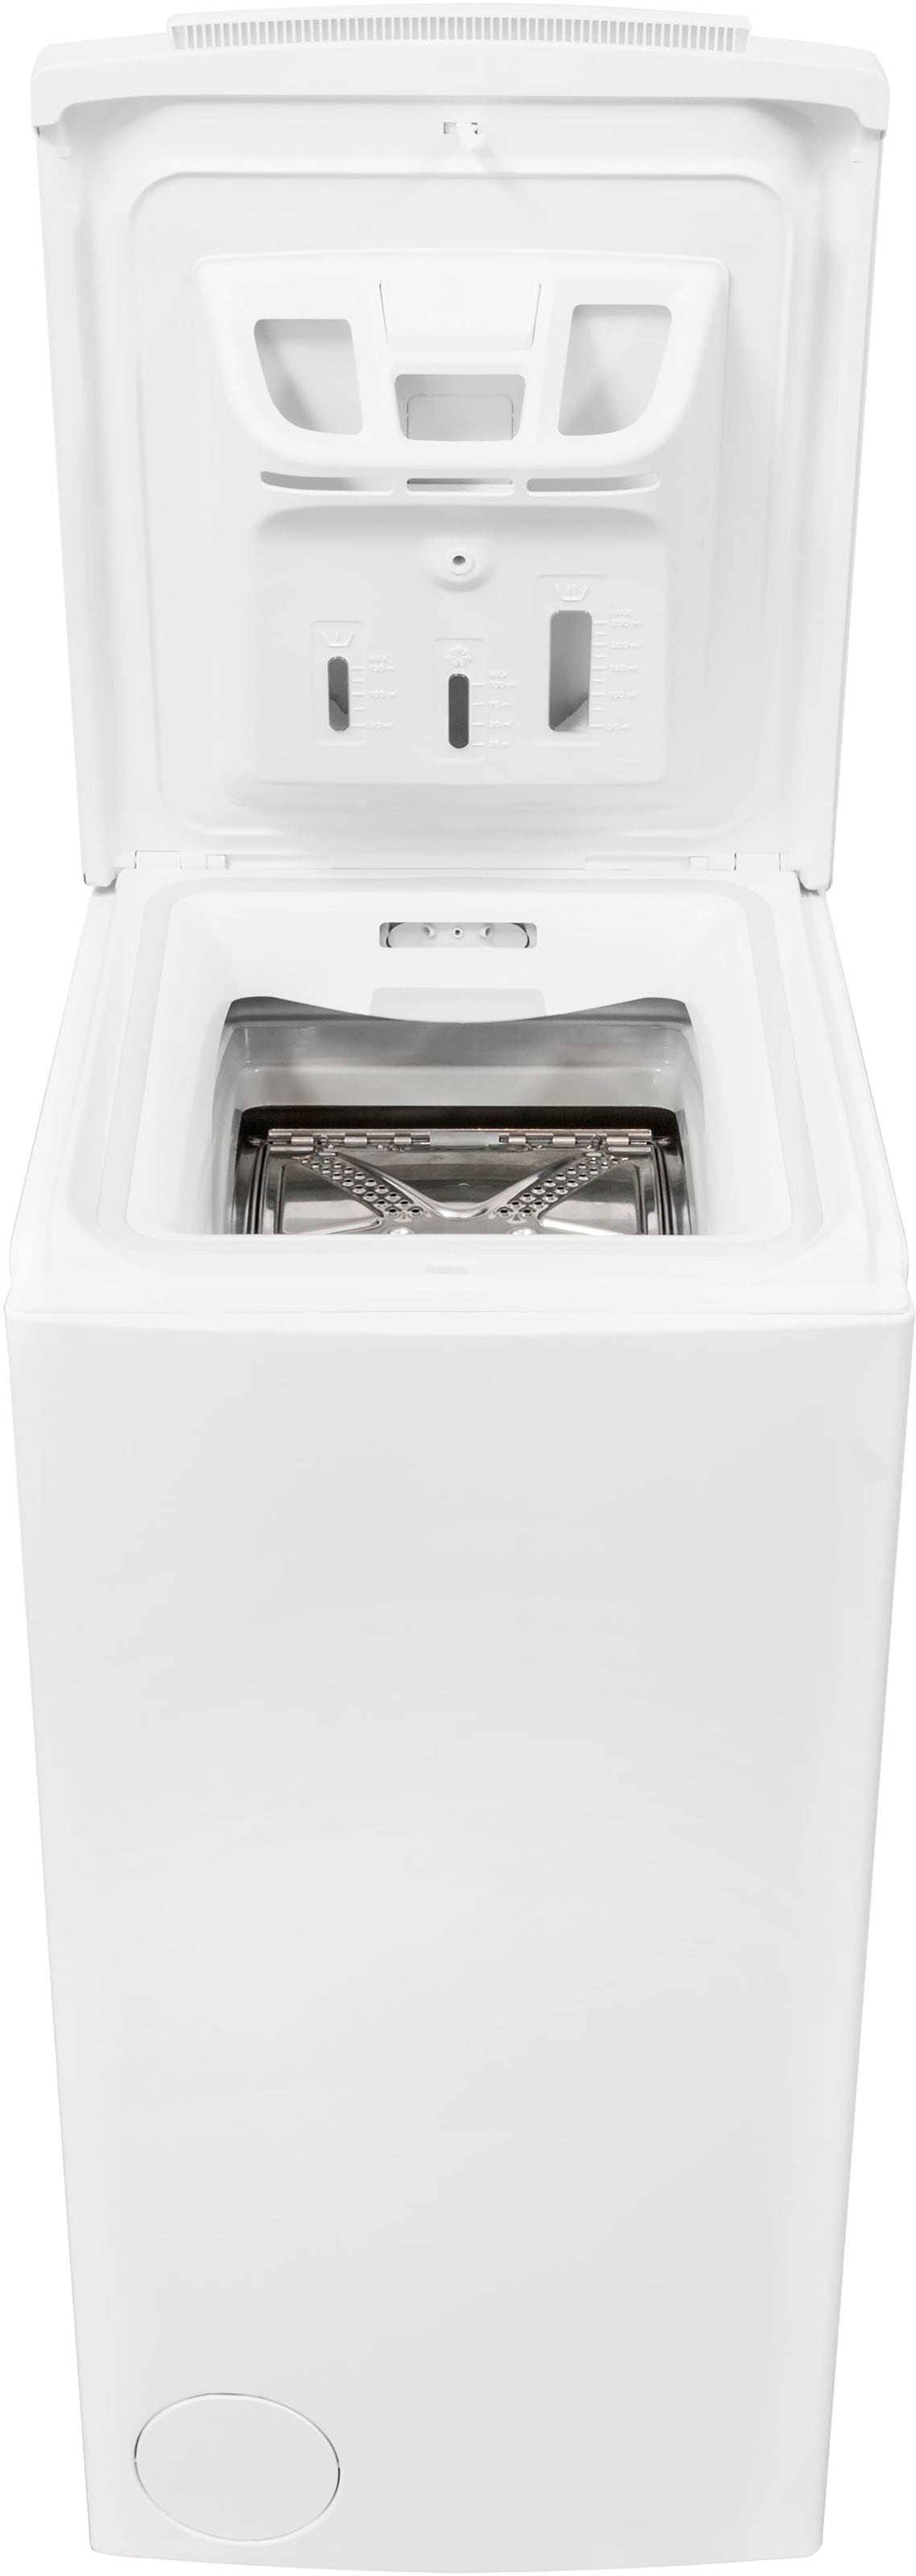 BAUKNECHT Waschmaschine Toplader »WAT PRIME 652 DI N«, WAT PRIME 652 DI N, 6 kg, 1200 U/min